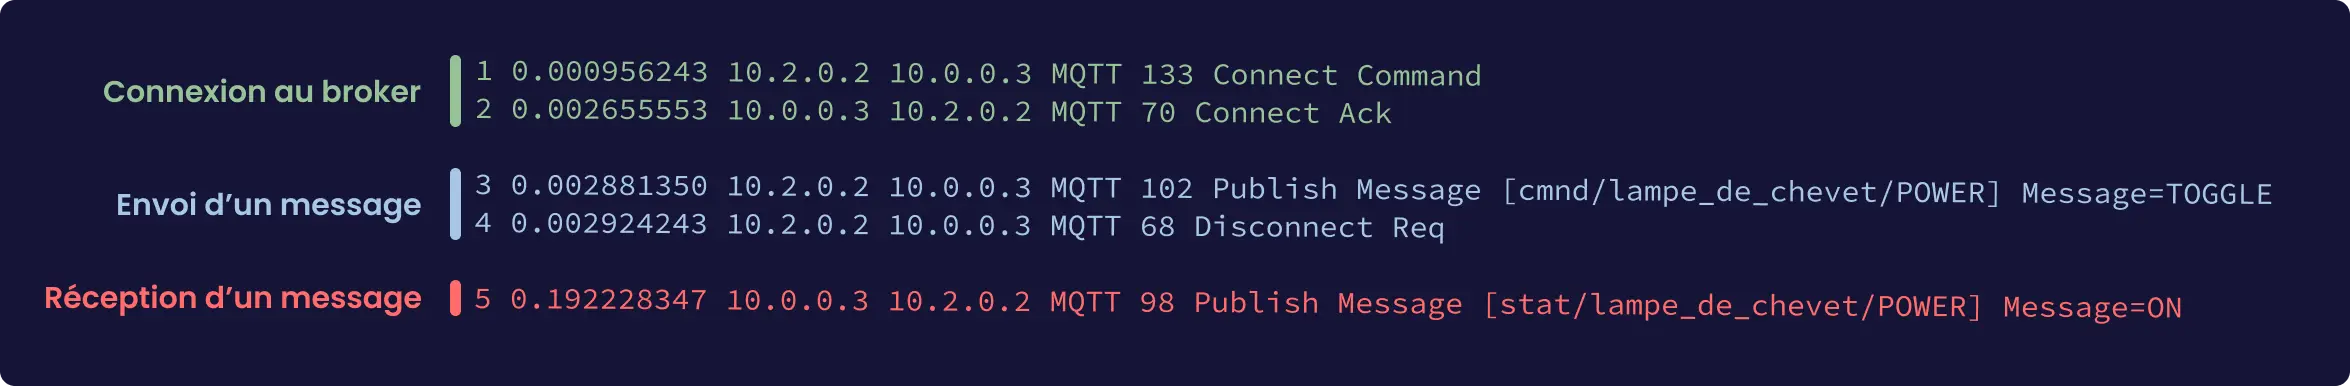 Trame réseau MQTT